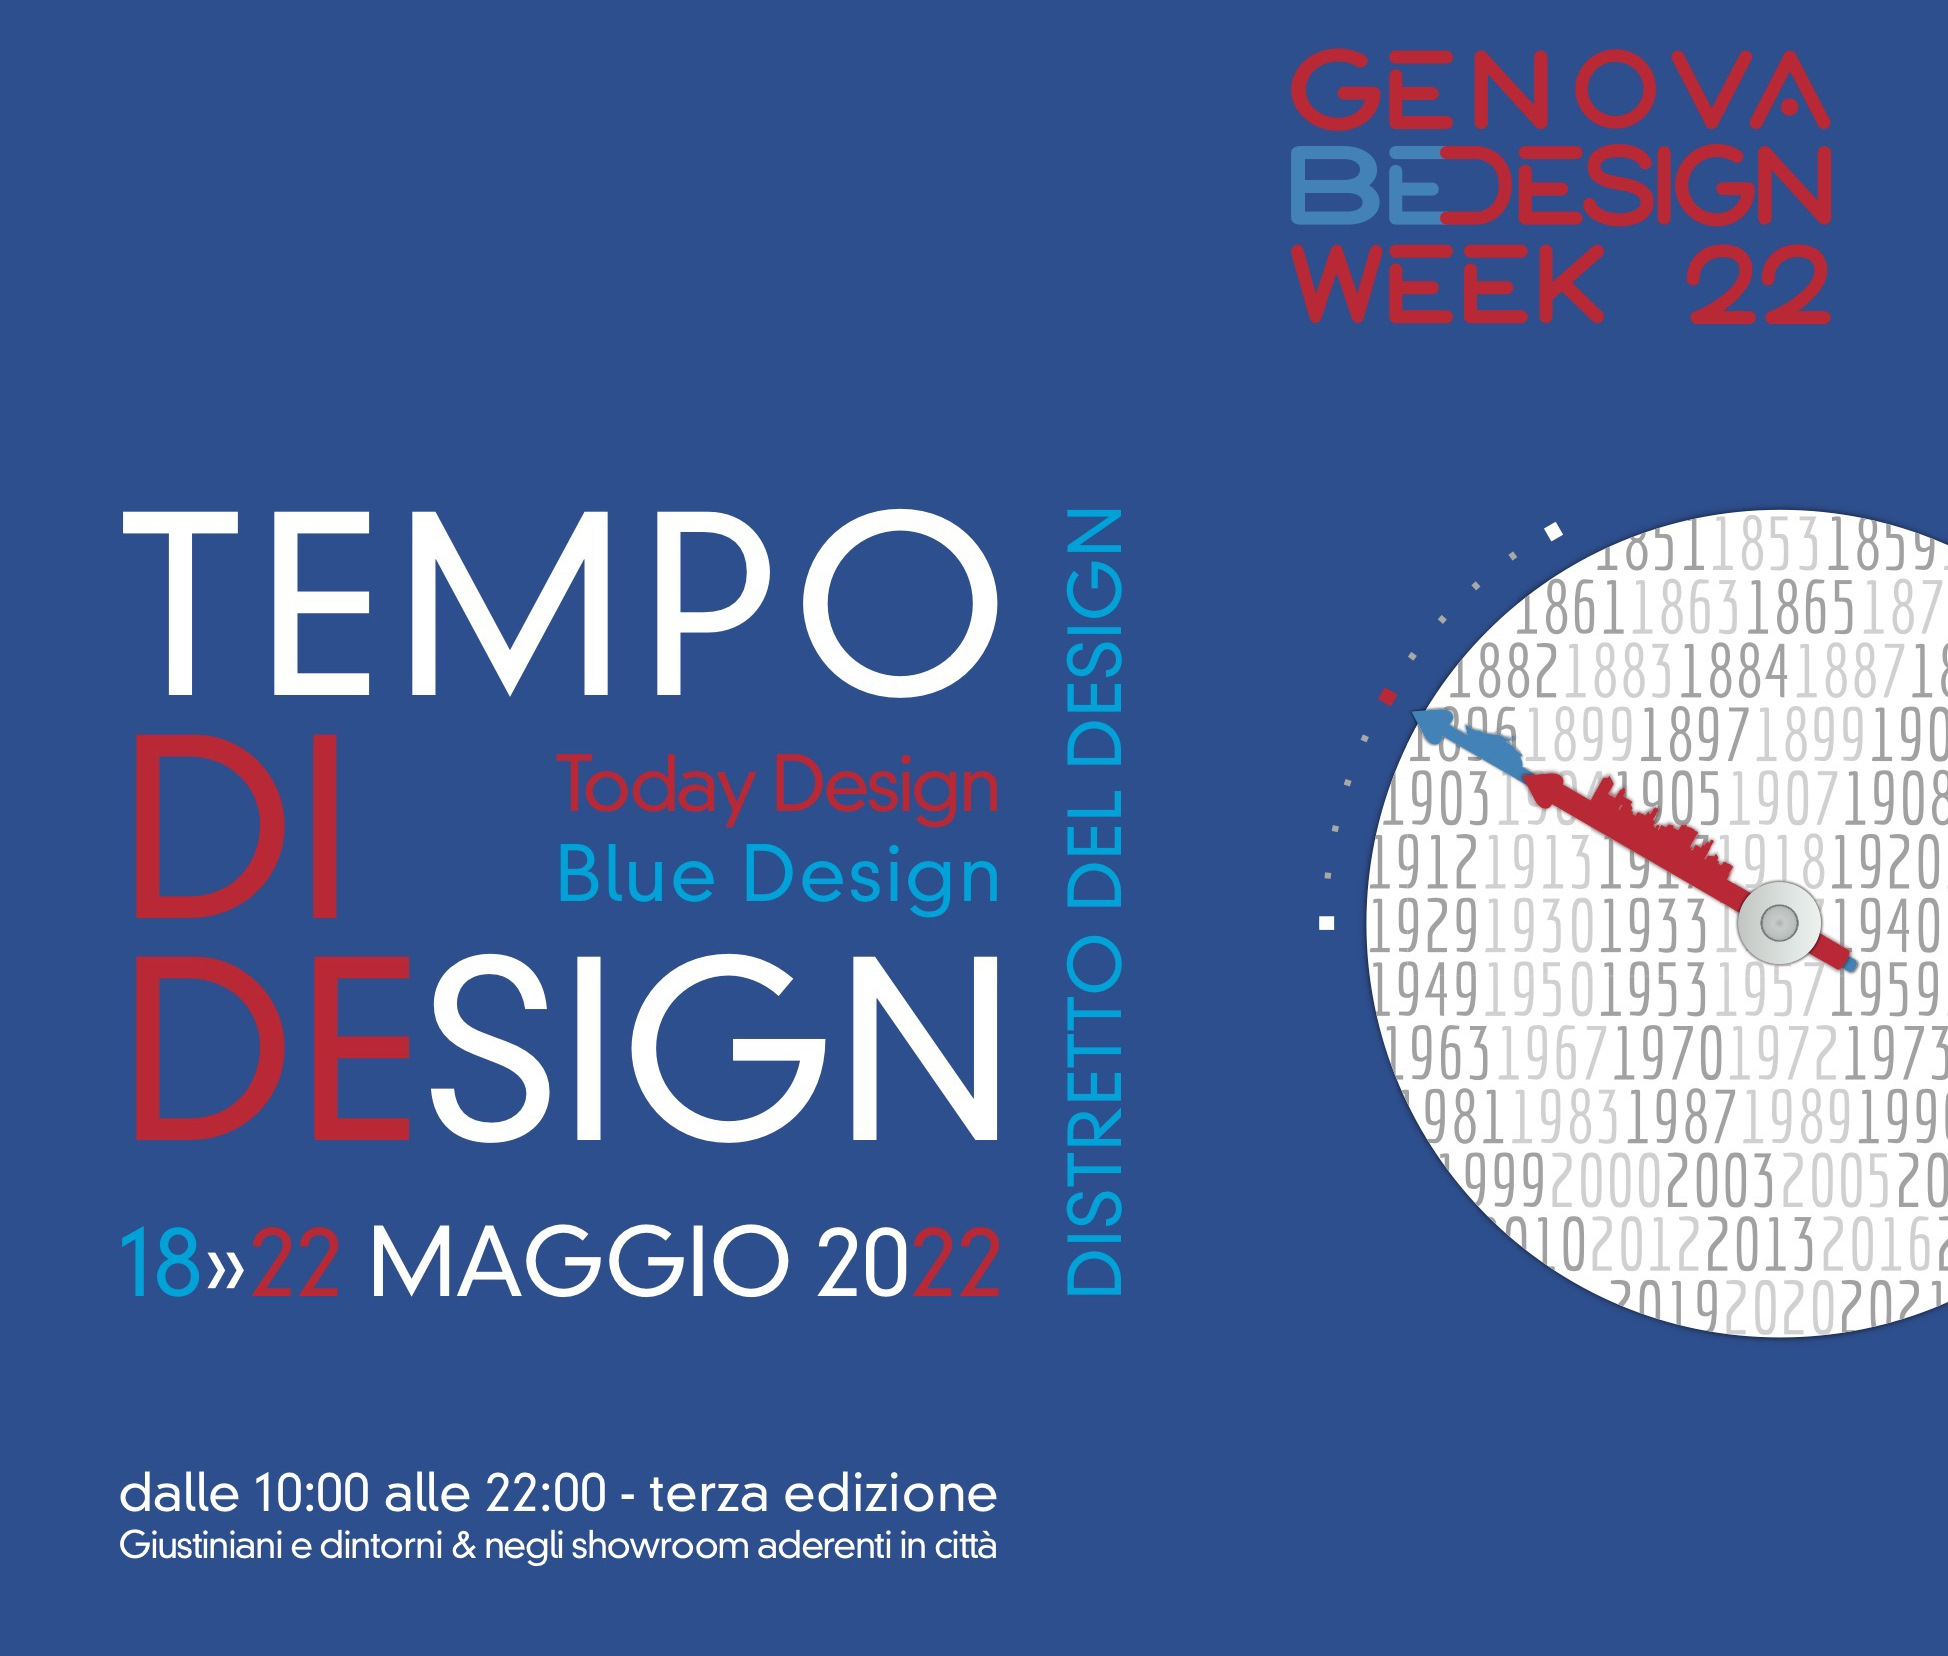 Dal 18 al 22 maggio la terza edizione del Festival del Tempo nella Genova BeDesign Week 2022: il programma completo